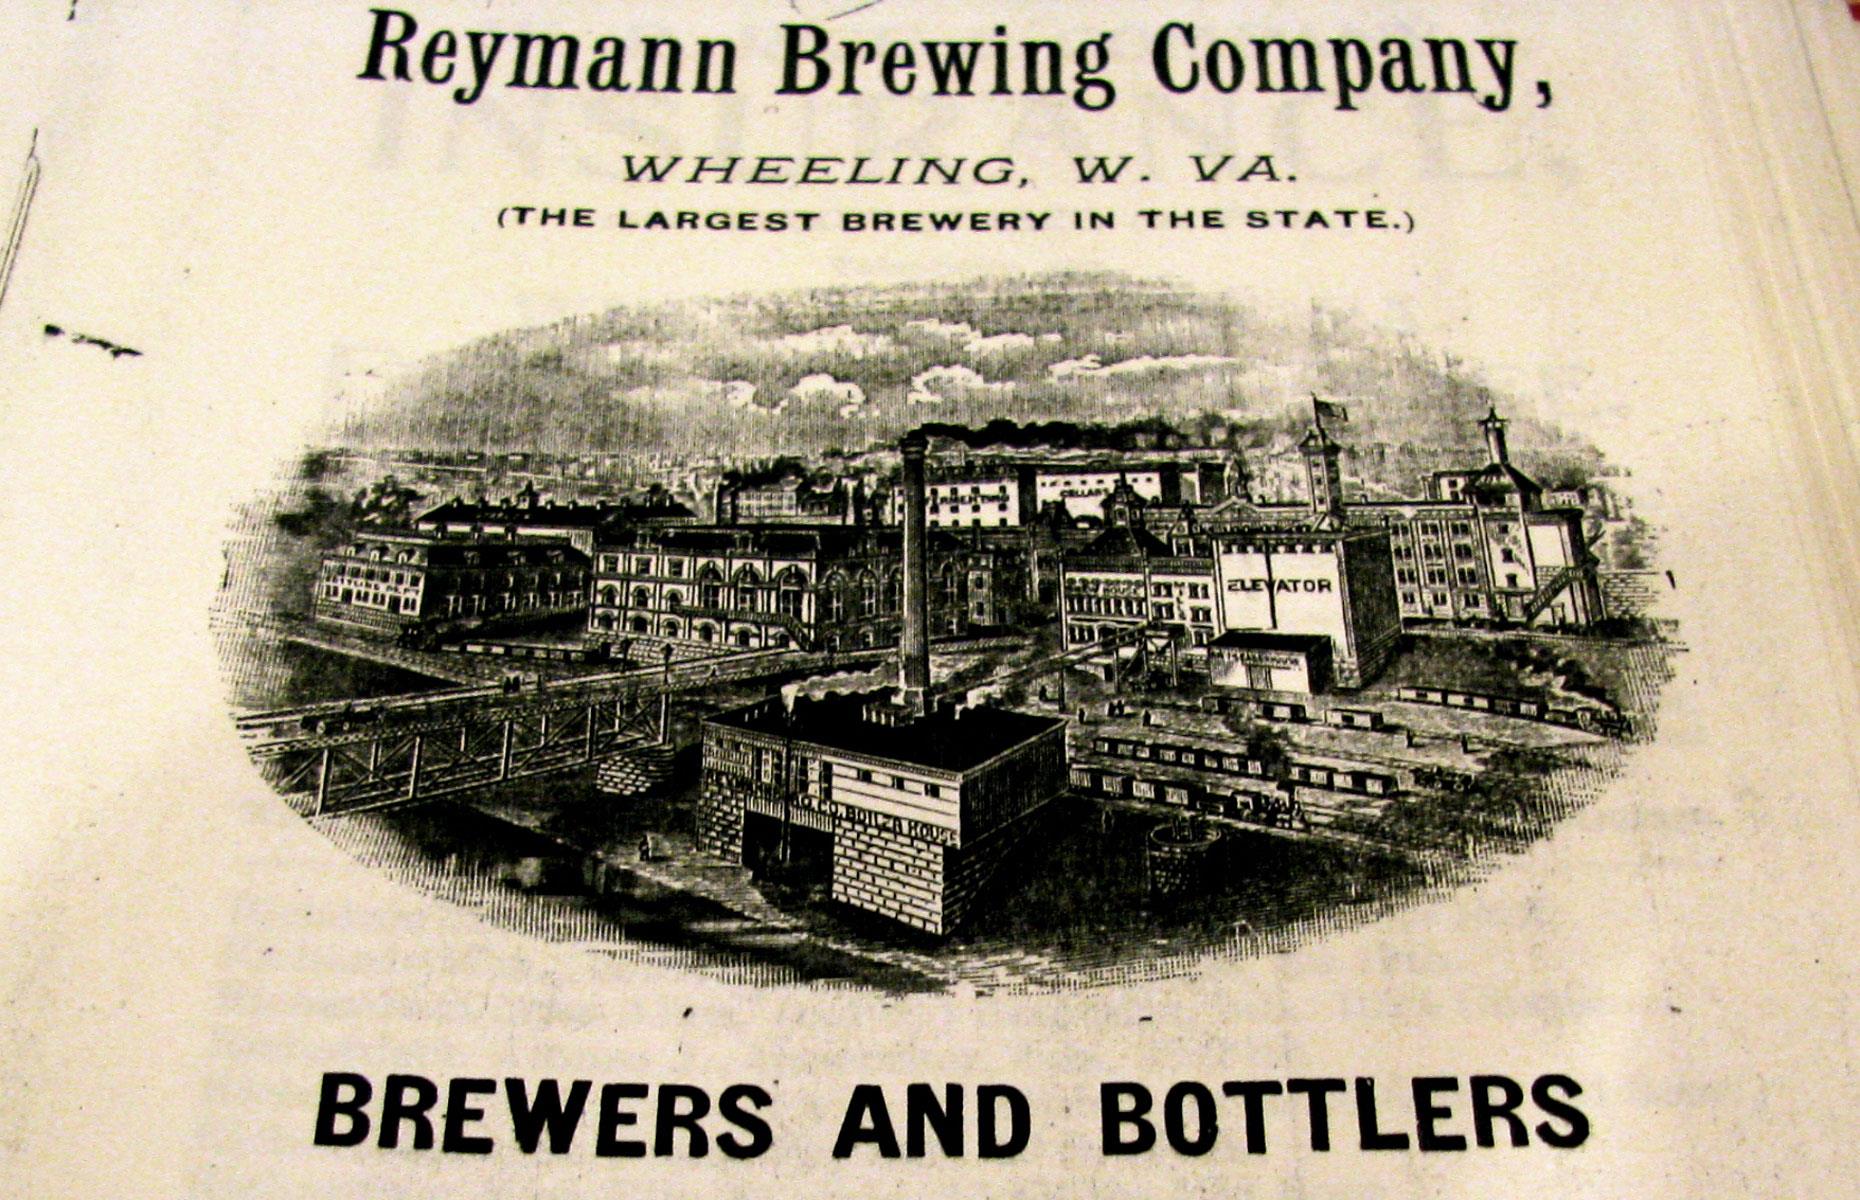 West Virginia: Reymann Brewing Co. 